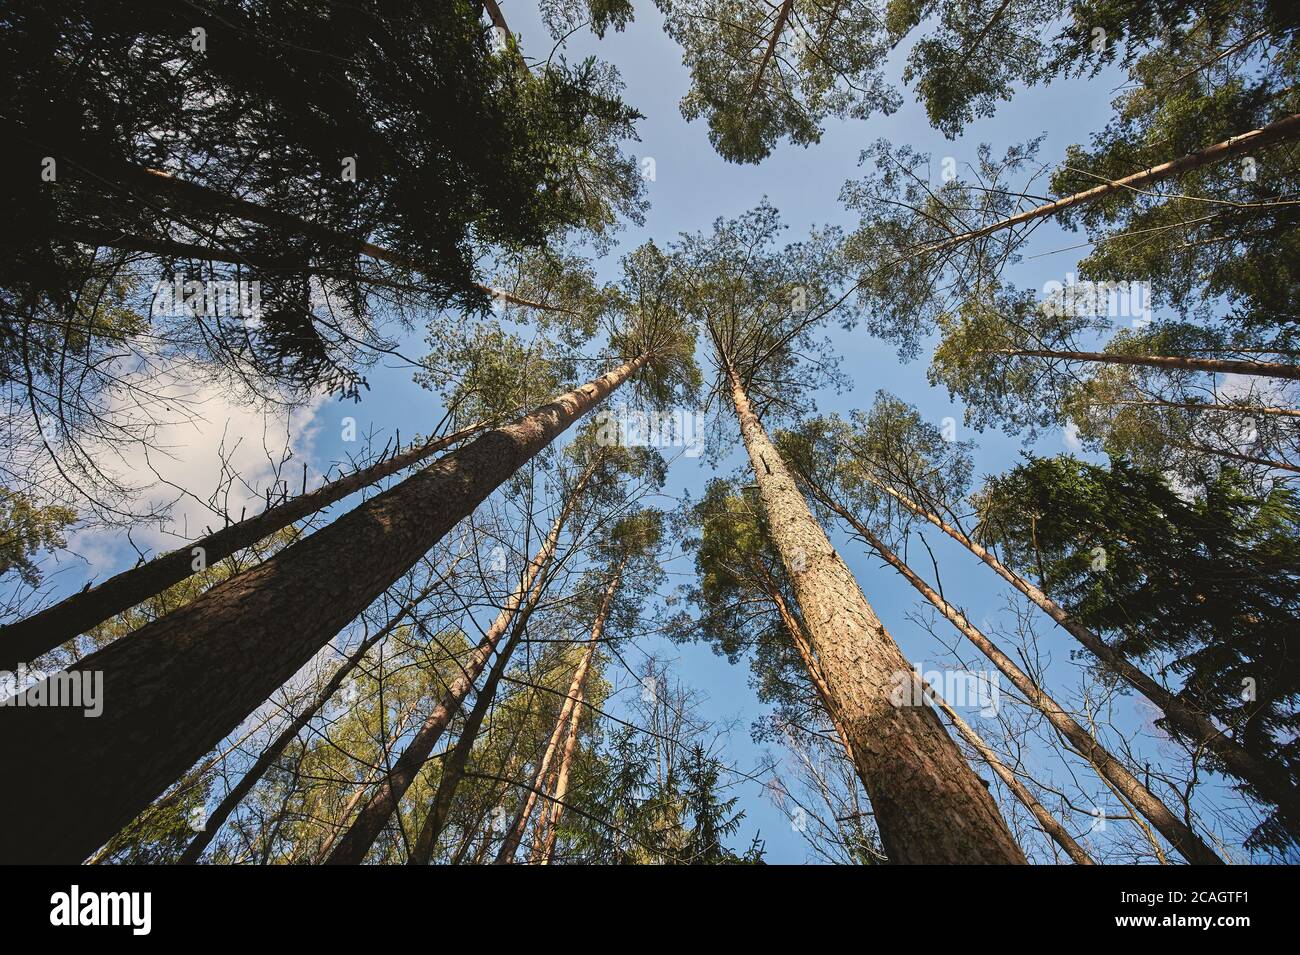 Grand arbre de pins sur fond bleu ciel de la vue de dessous Banque D'Images